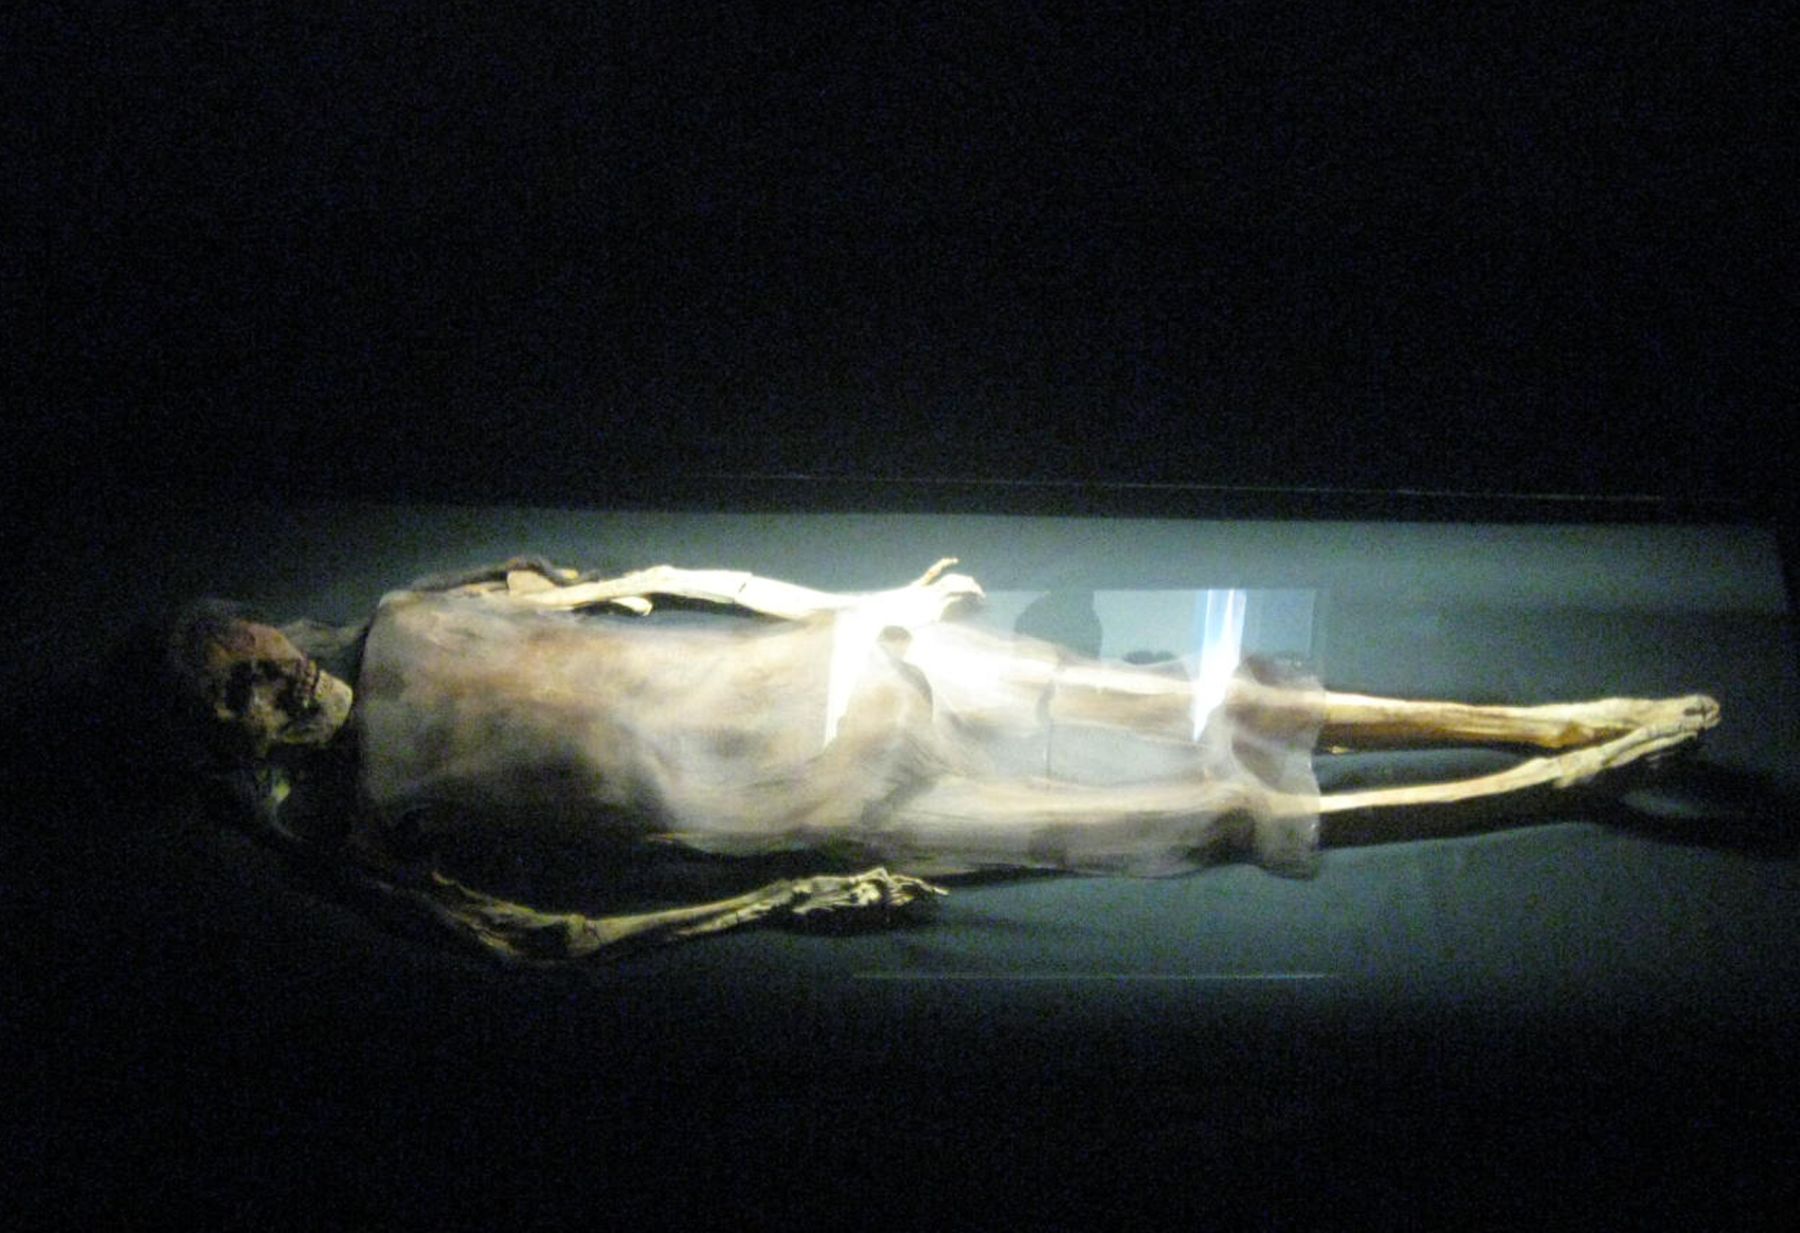 Cuerpo momificado de la Señora de Cao, encontrado en la huaca Cao Viejo, que integra el complejo arqueológico El Brujo. Actualmente puede ser contemplado en el Museo de Cao, en Trujillo. ANDINA/Difusión